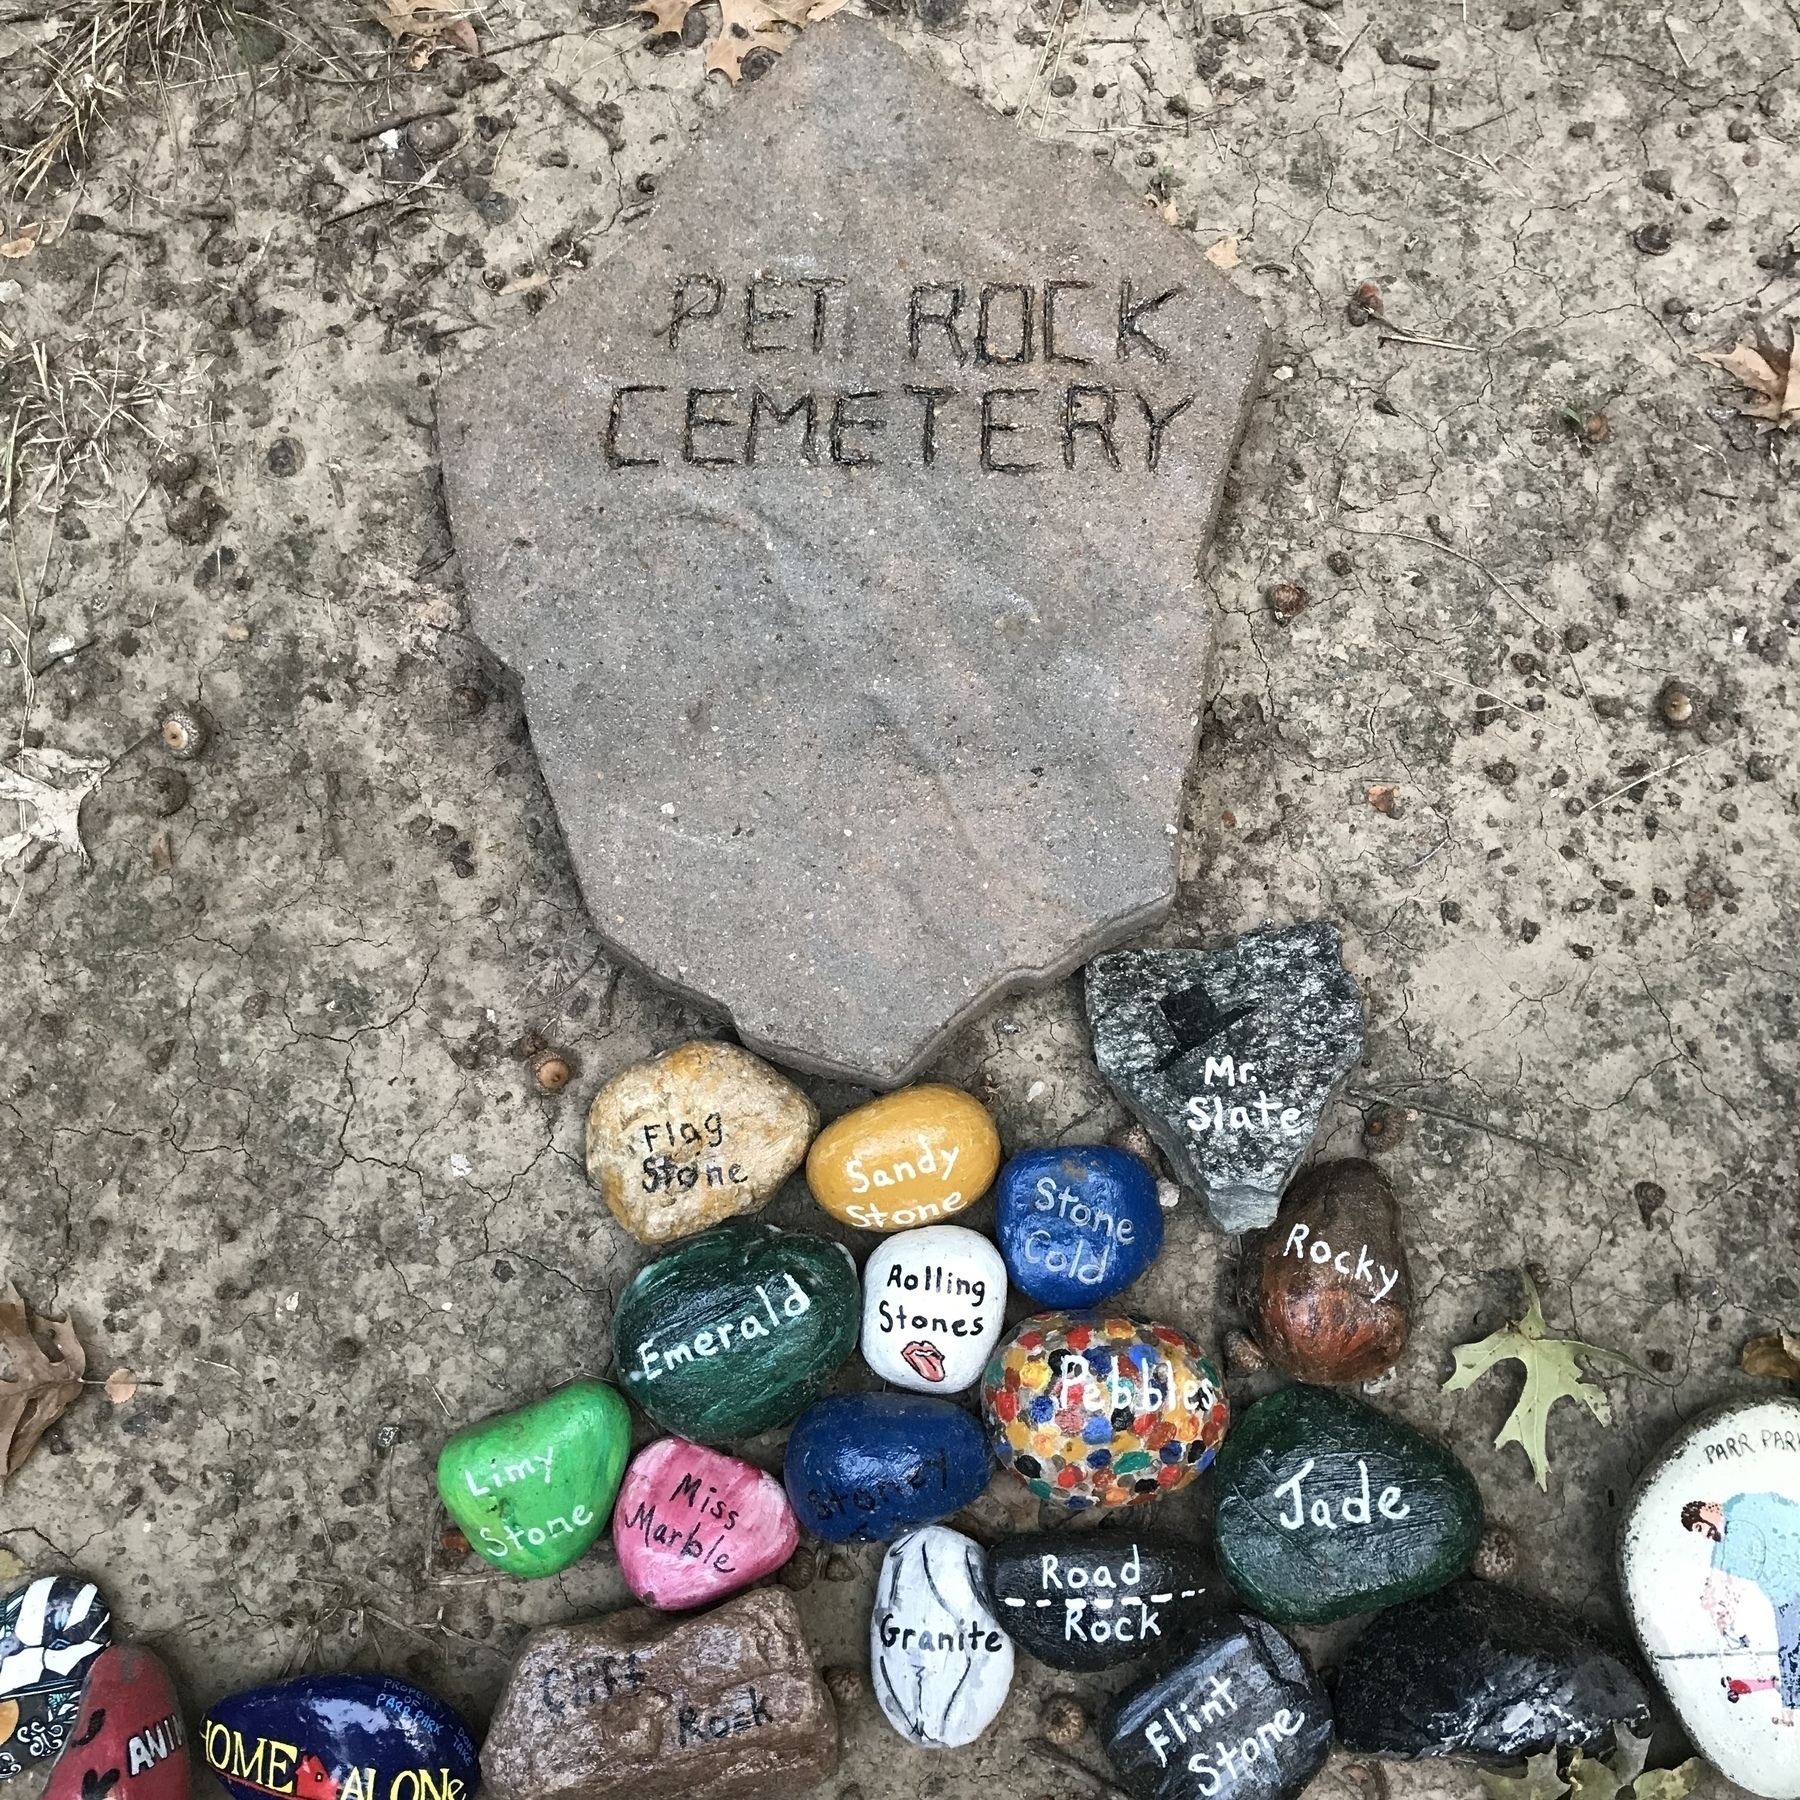 Pet rock cemetery at the Parr Park Rock Art Trail